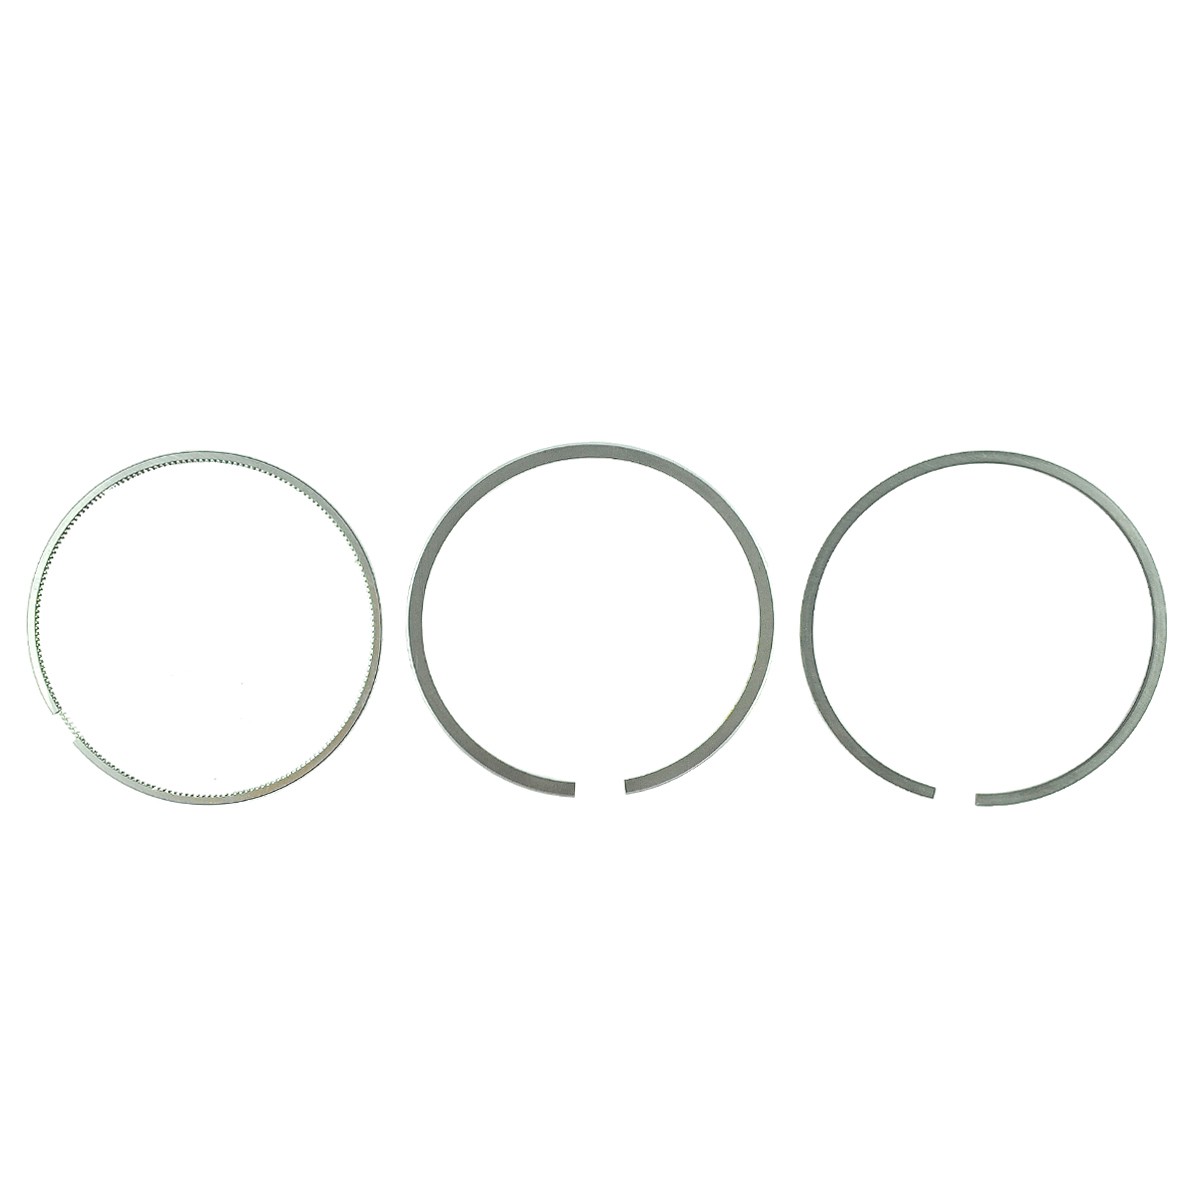 Piston rings / Ø 98 mm / 2.00 x 2.00 x 4.00 mm / Kubota V3300/V3600 / Kubota M8200/M9000 / 1C010-21050 / 6-26-100-74